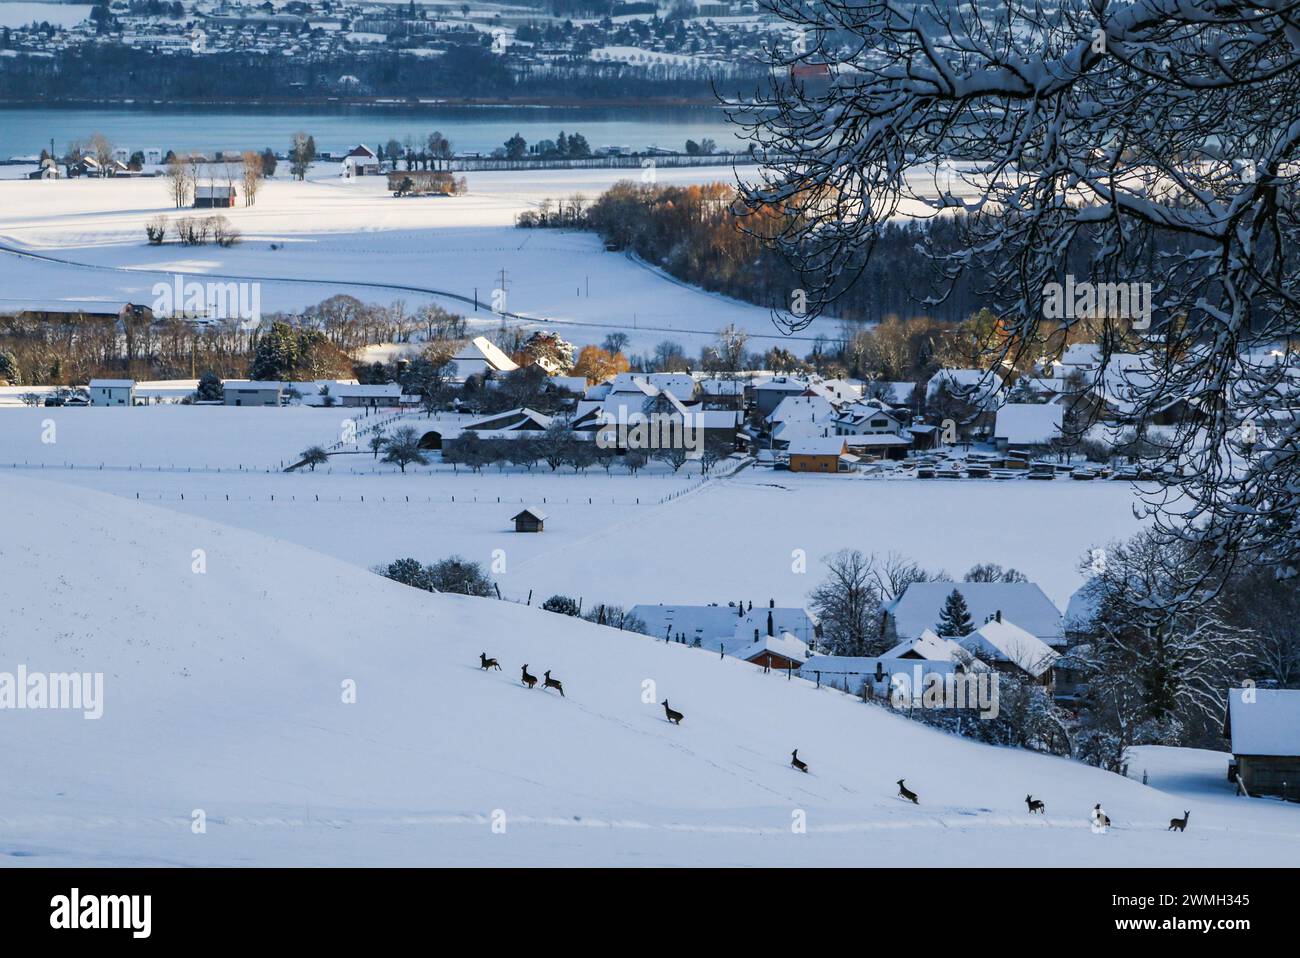 Troupeau de cerfs rooches sur une prairie enneigée au-dessus des villages et du lac de Neuchâtel en Suisse (Canton de Vaud) Banque D'Images